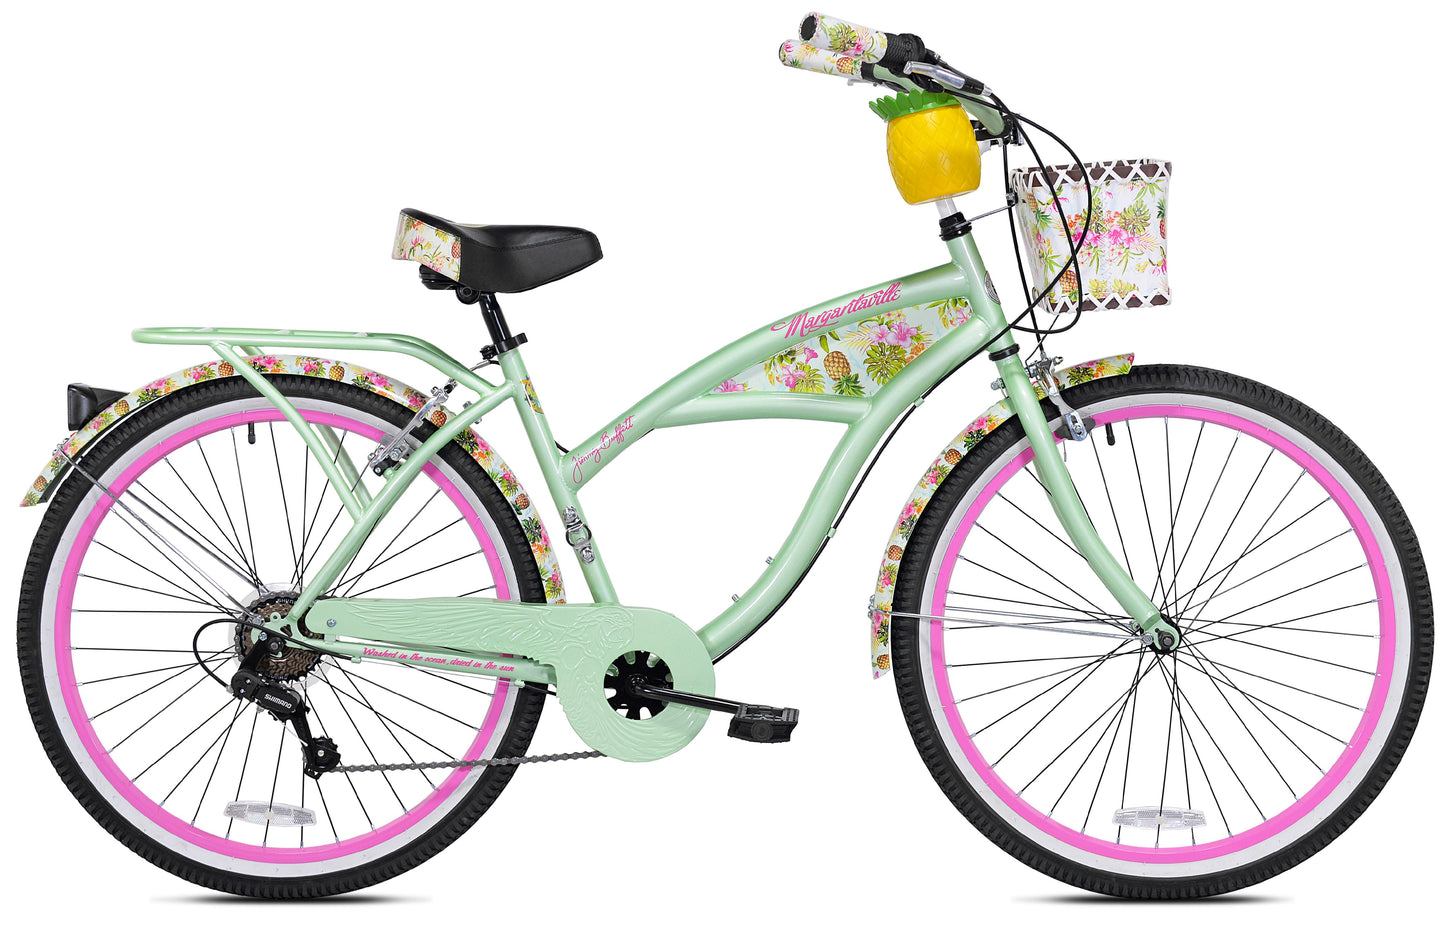 Margaritaville 26" Pineapple Women'S Cruiser Bike, Green